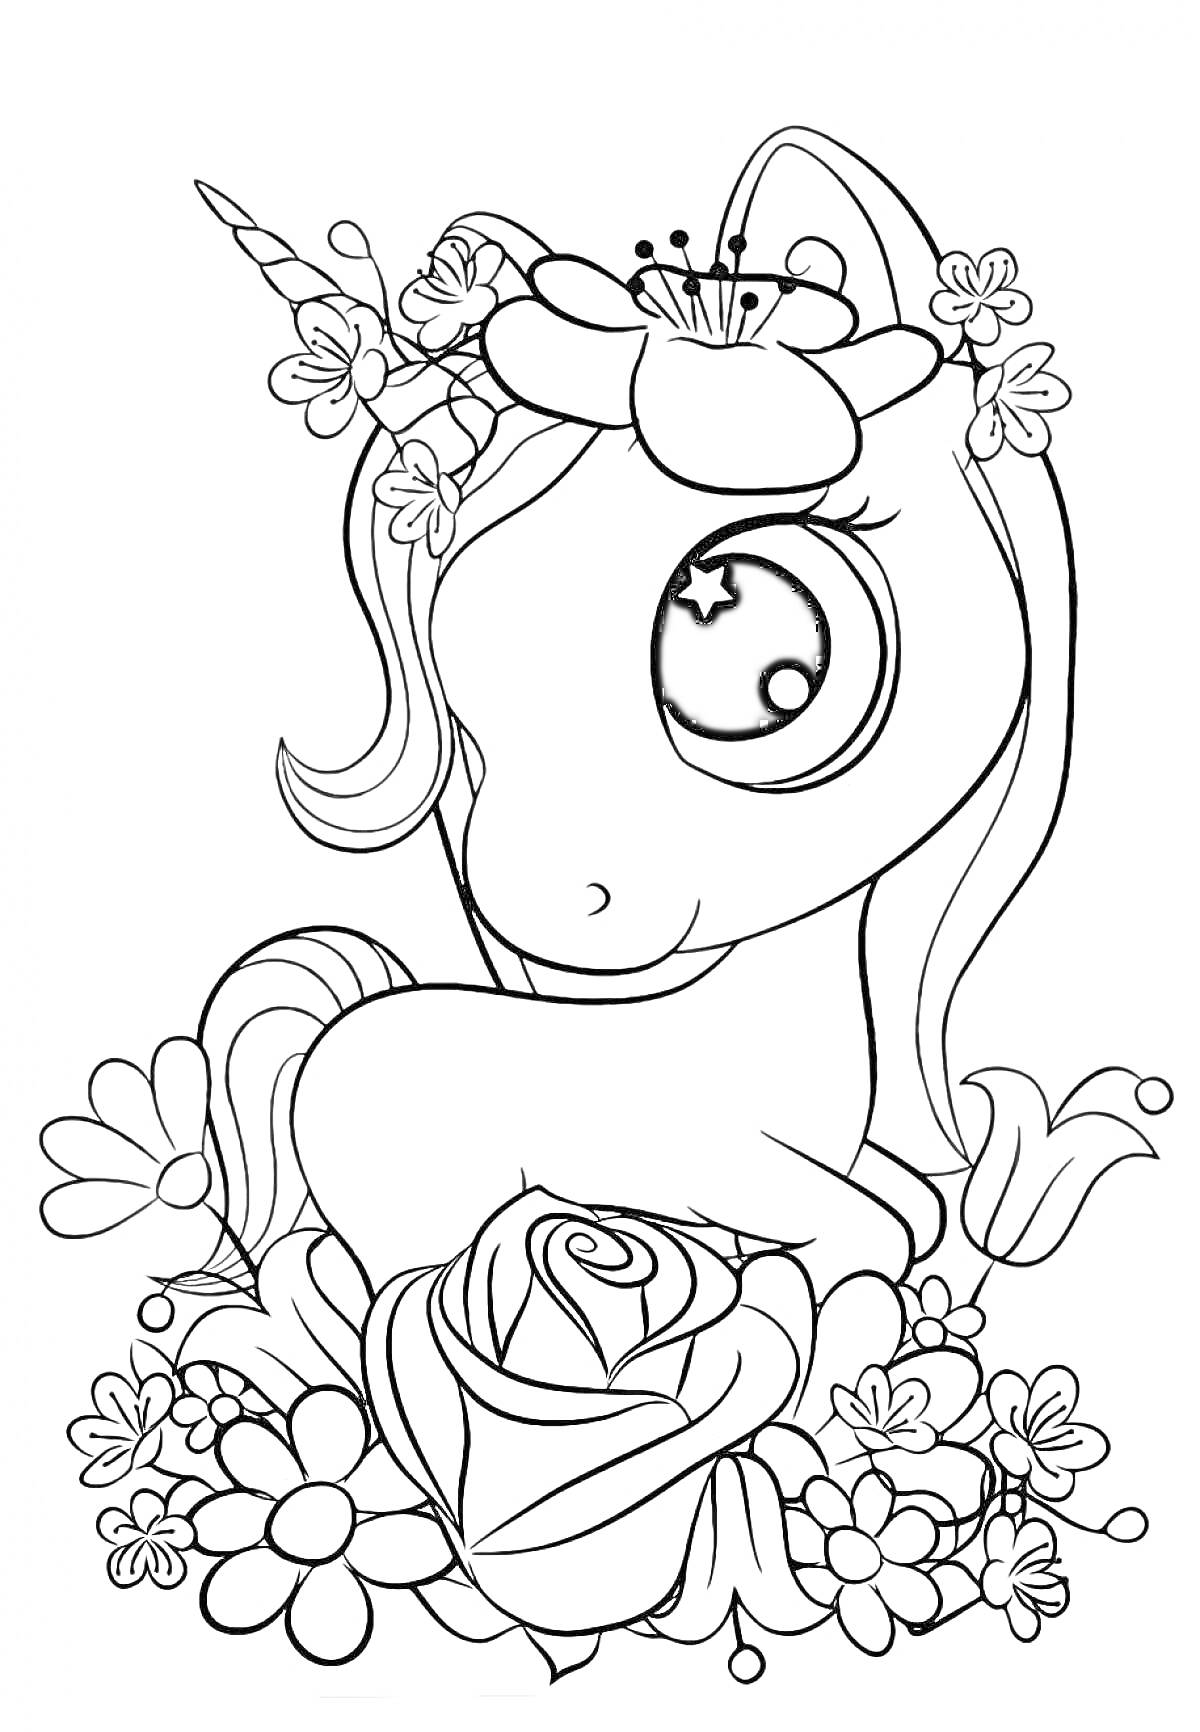 Единорог в цветах, окружённый цветами с крупной розой